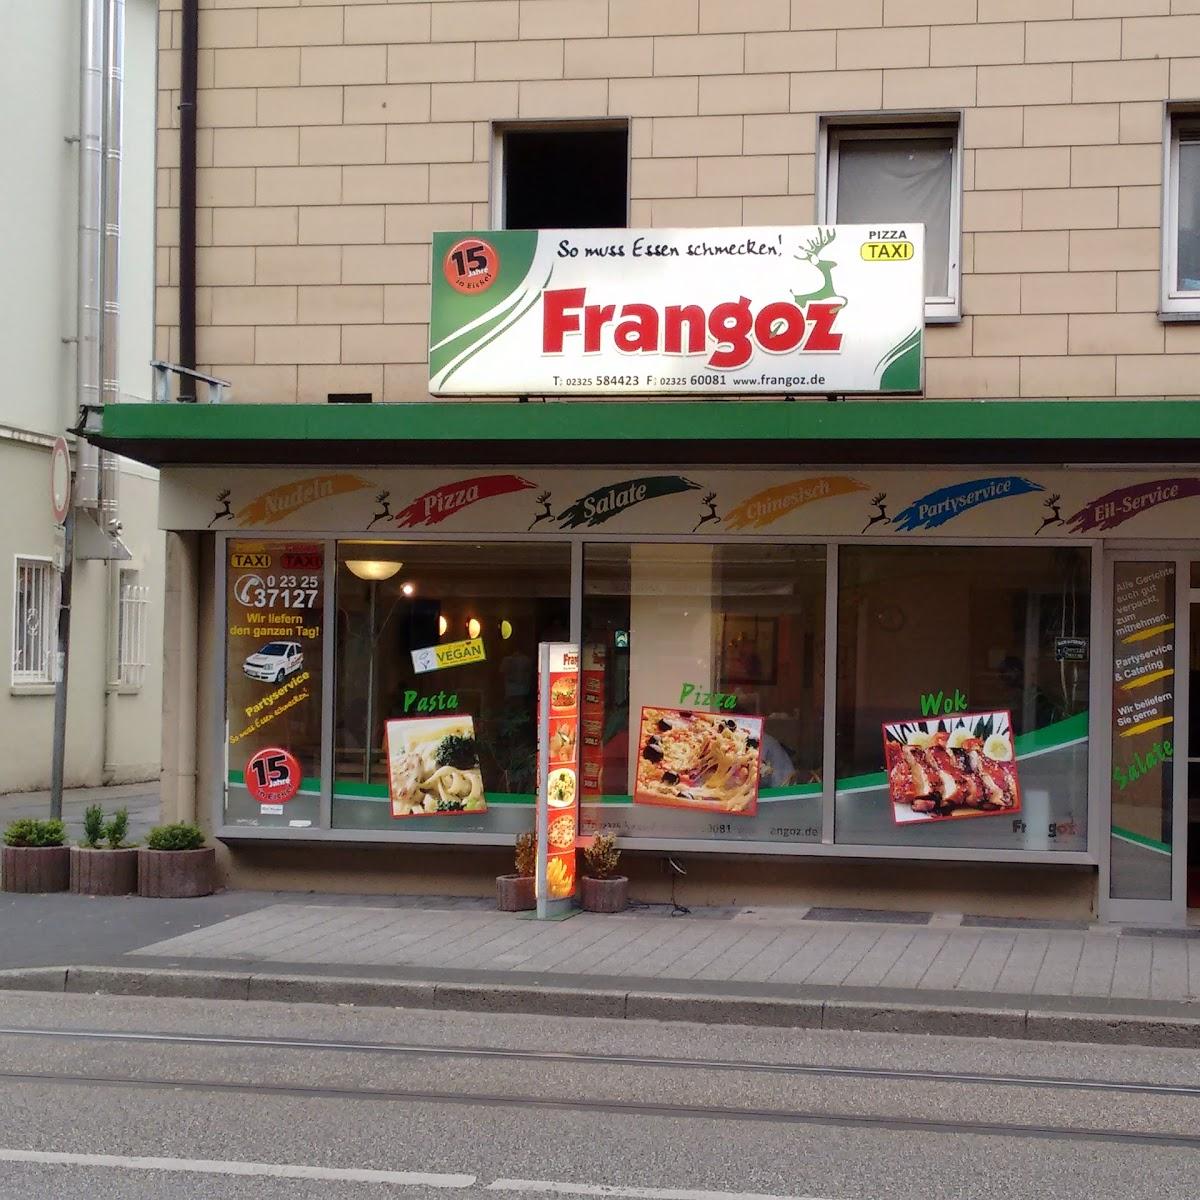 Restaurant "Frangoz - Pizza Pasta & Wok" in Herne